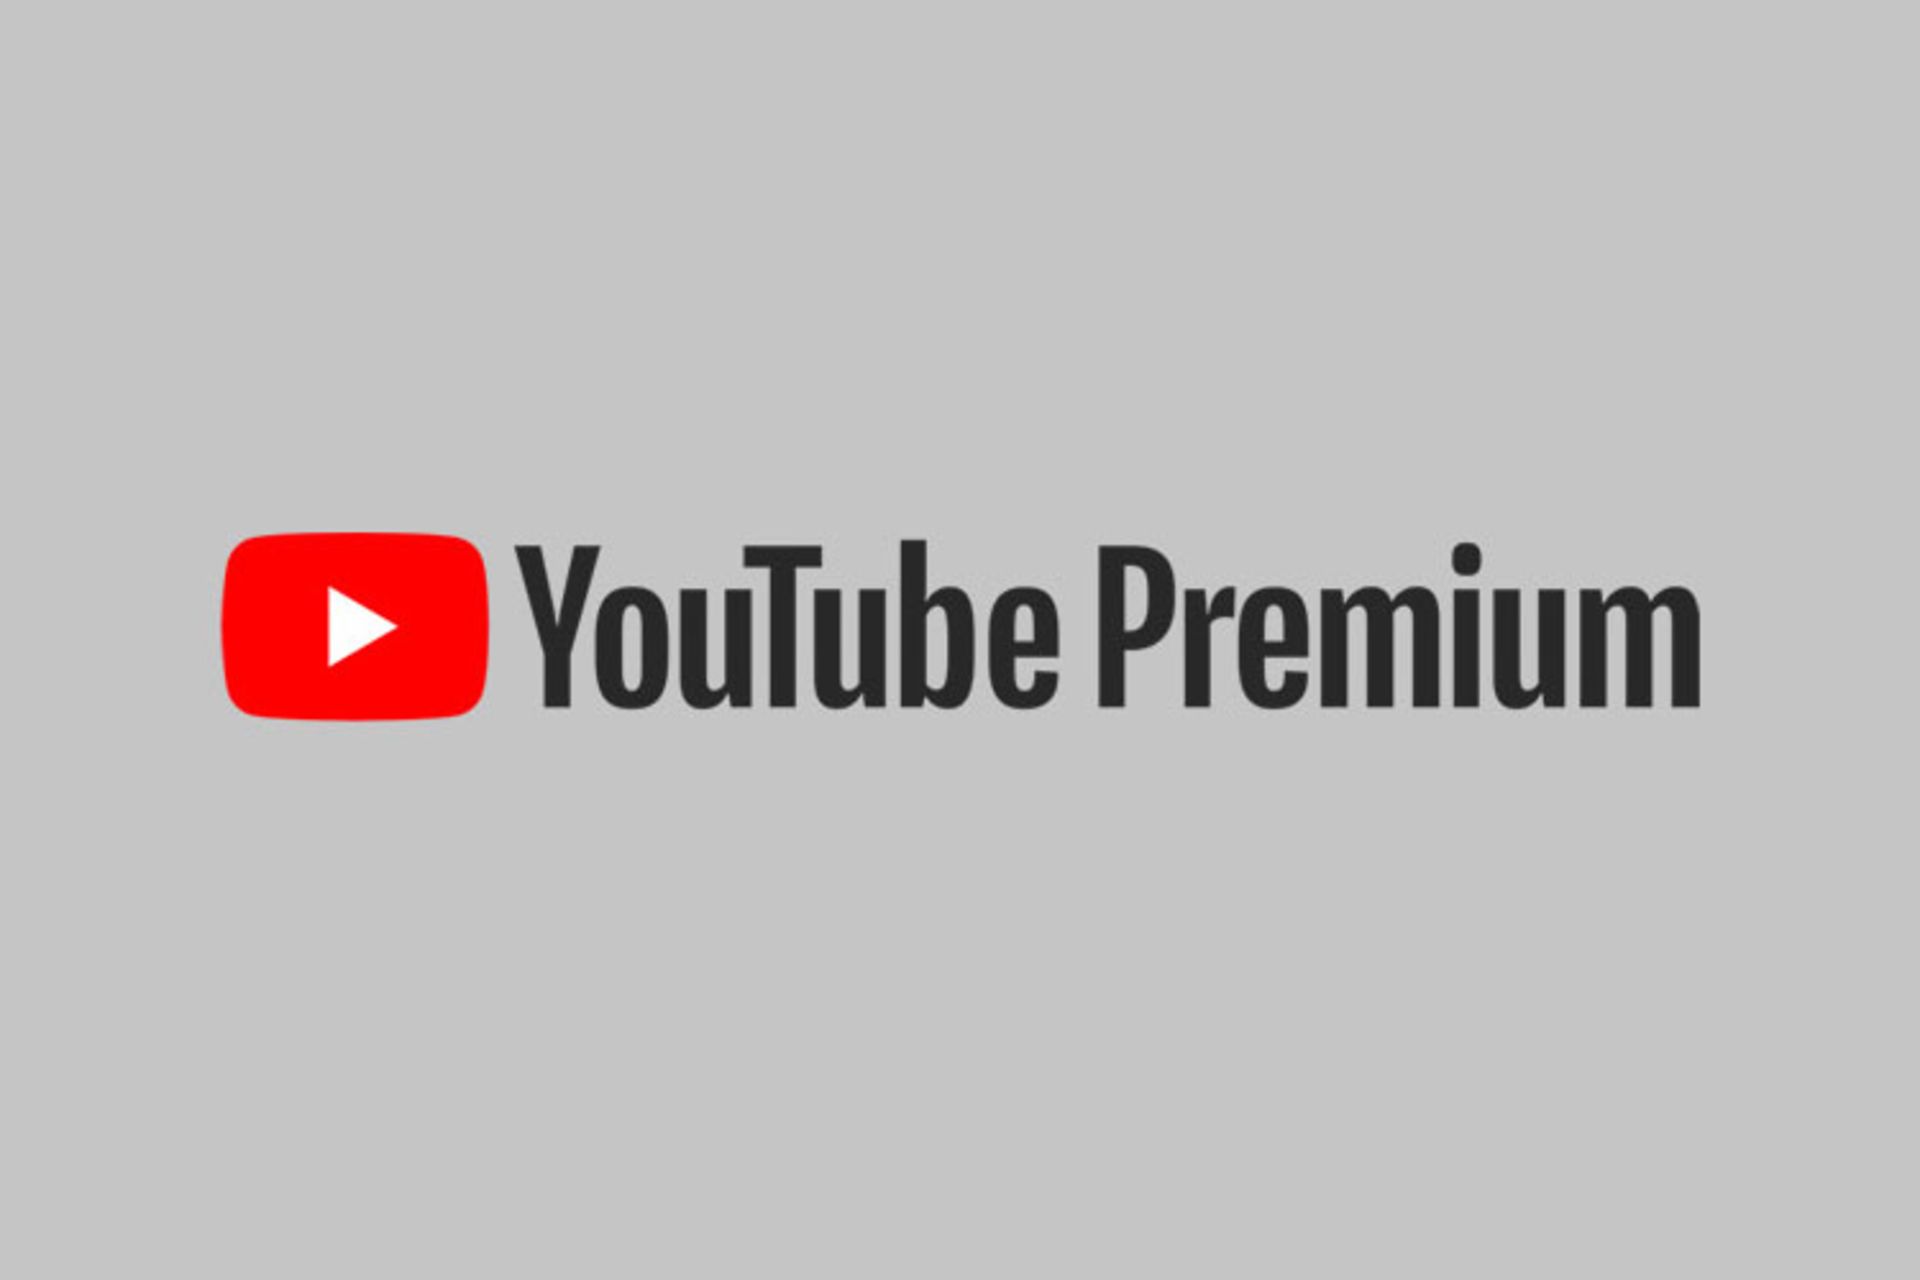 مرجع متخصصين ايران يوتيوب پريميوم / Youtube Premium